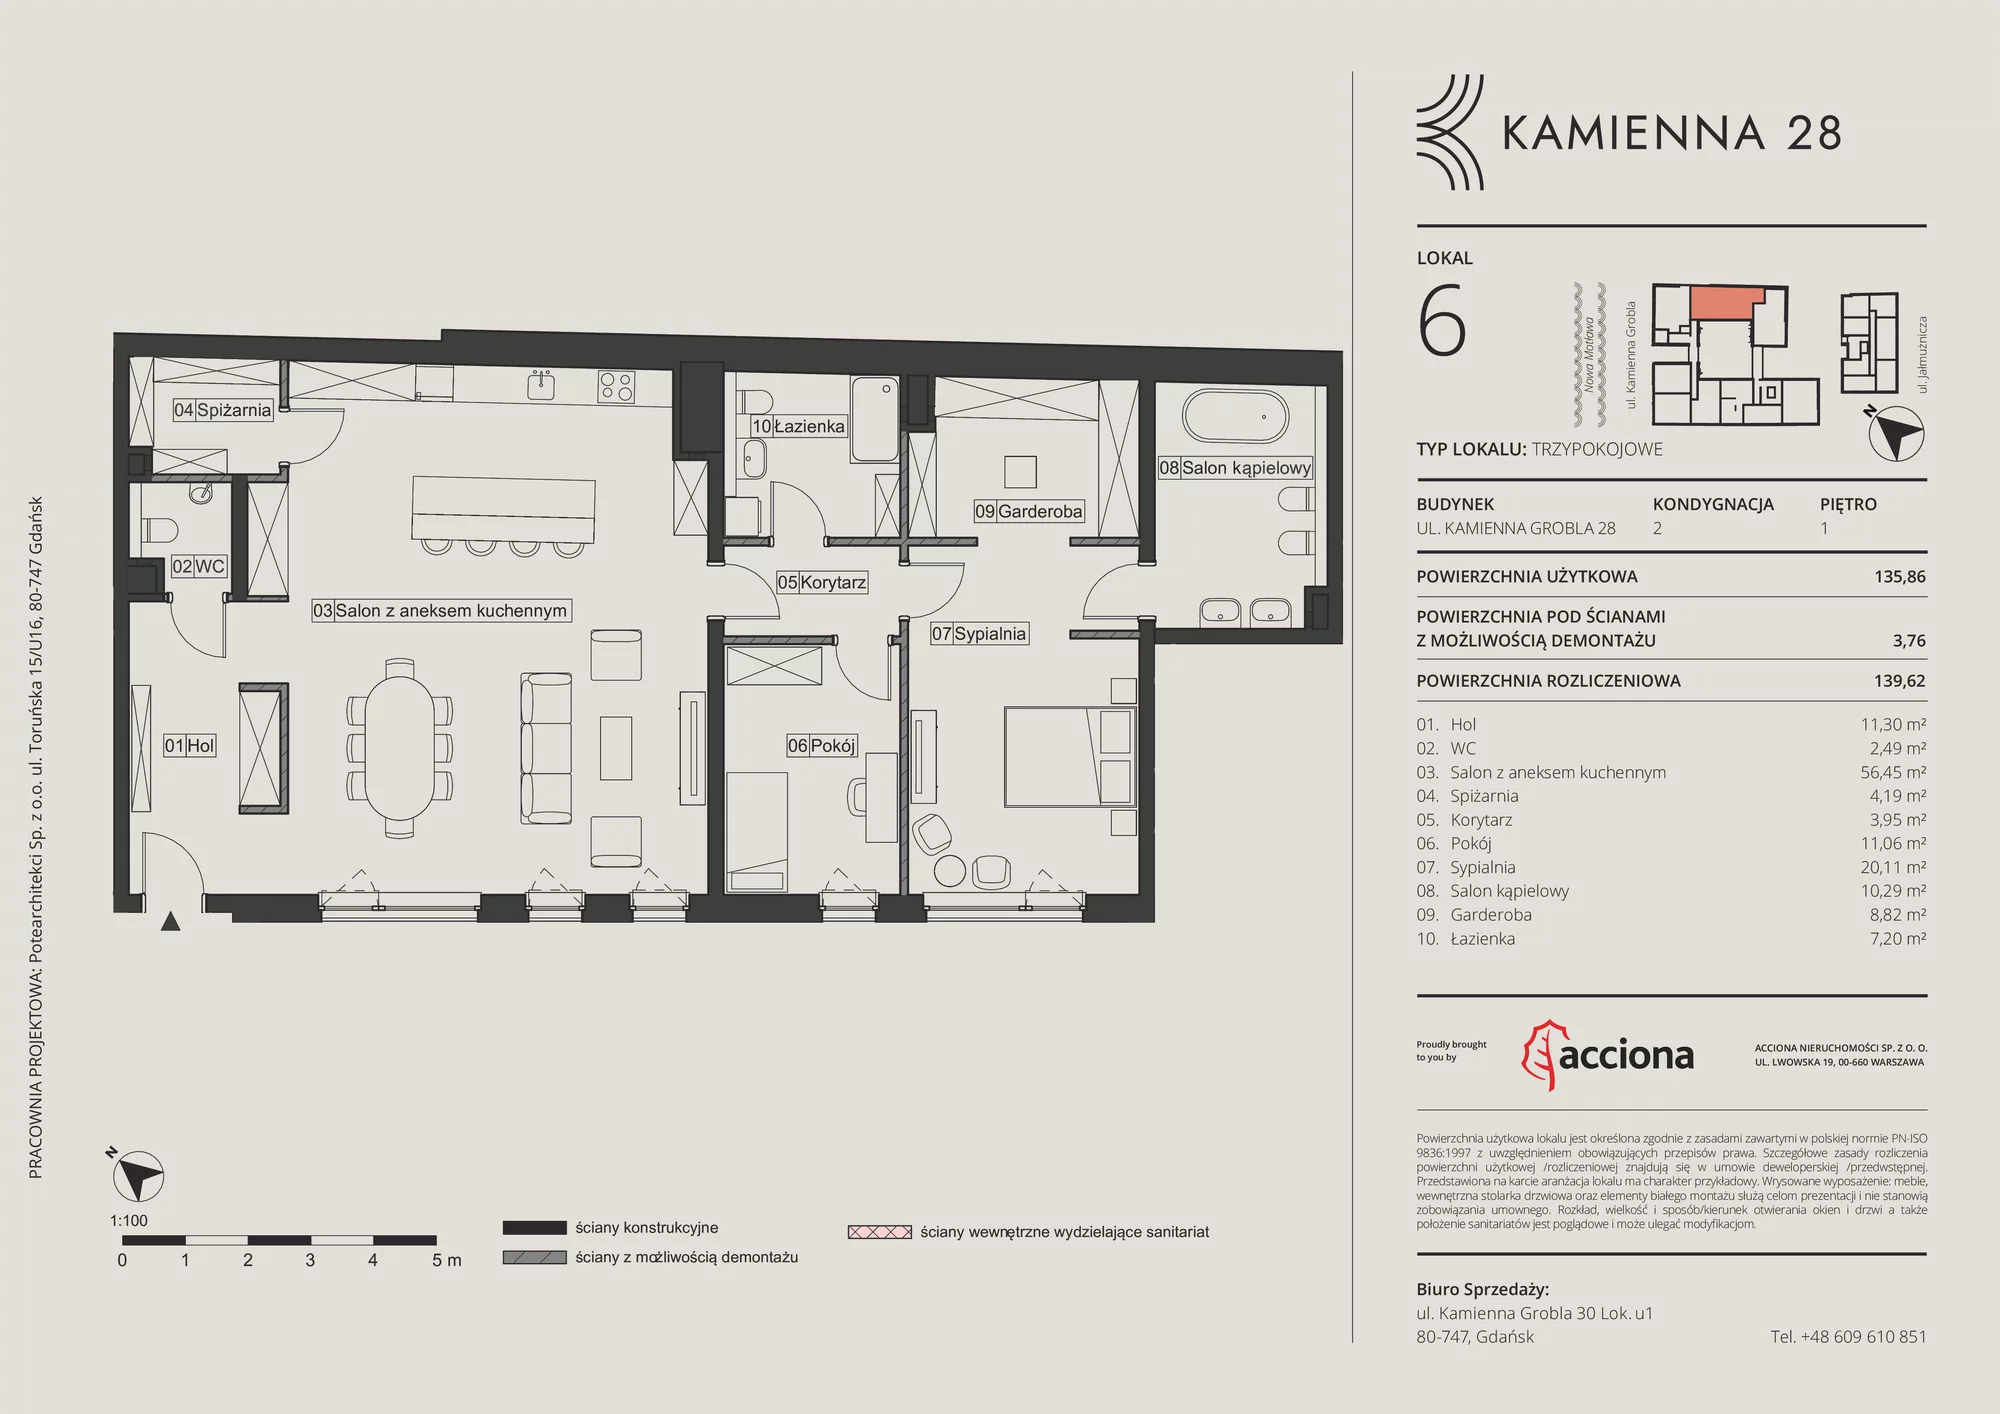 Mieszkanie 139,62 m², piętro 1, oferta nr 28.6, Kamienna 28, Gdańsk, Śródmieście, Dolne Miasto, ul. Kamienna Grobla 28/29